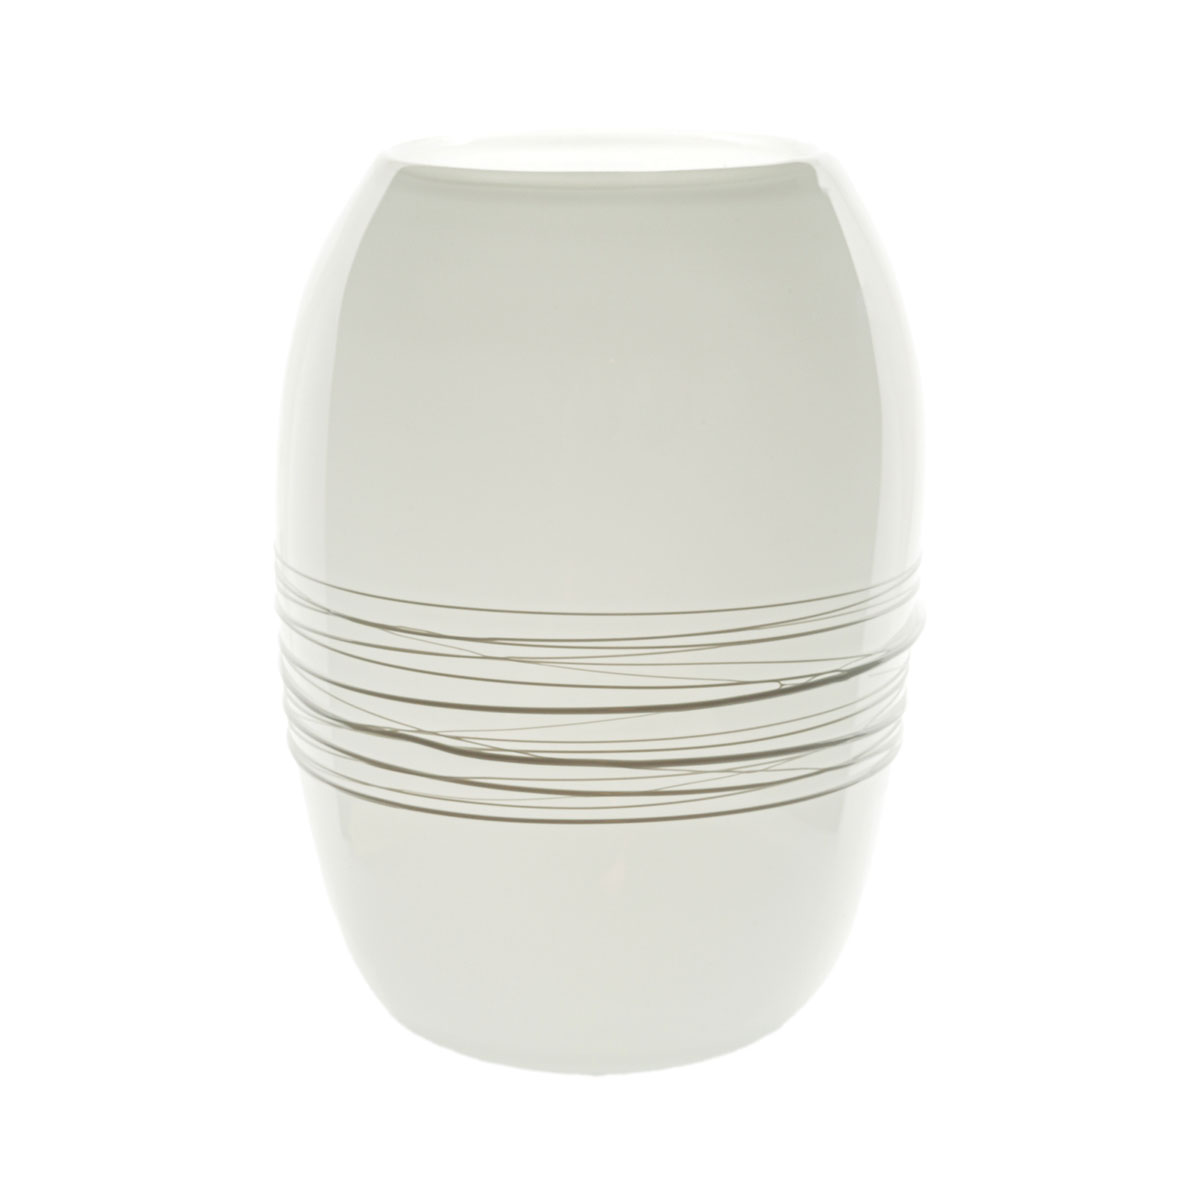 Vaso-Manzoni-bianco-white-vase-murano